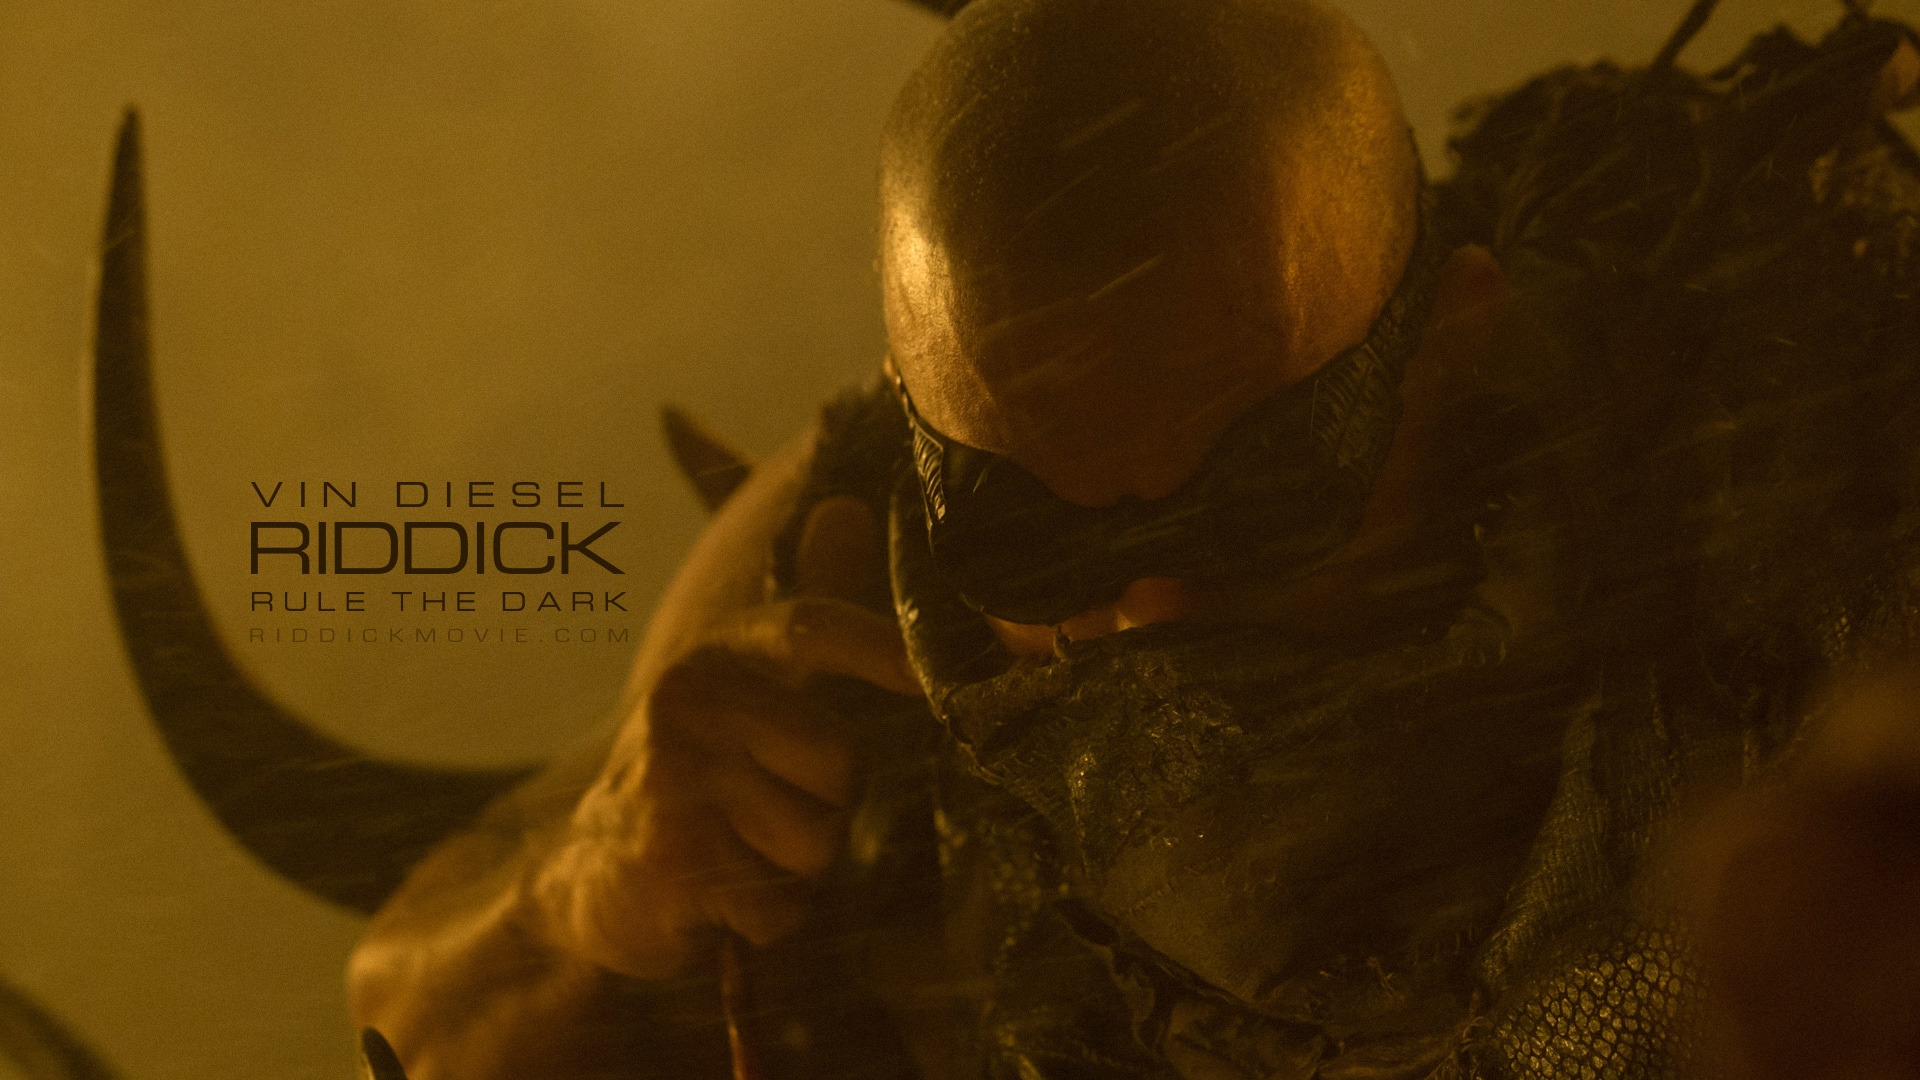 Vin Diesel Riddick for 1920 x 1080 HDTV 1080p resolution